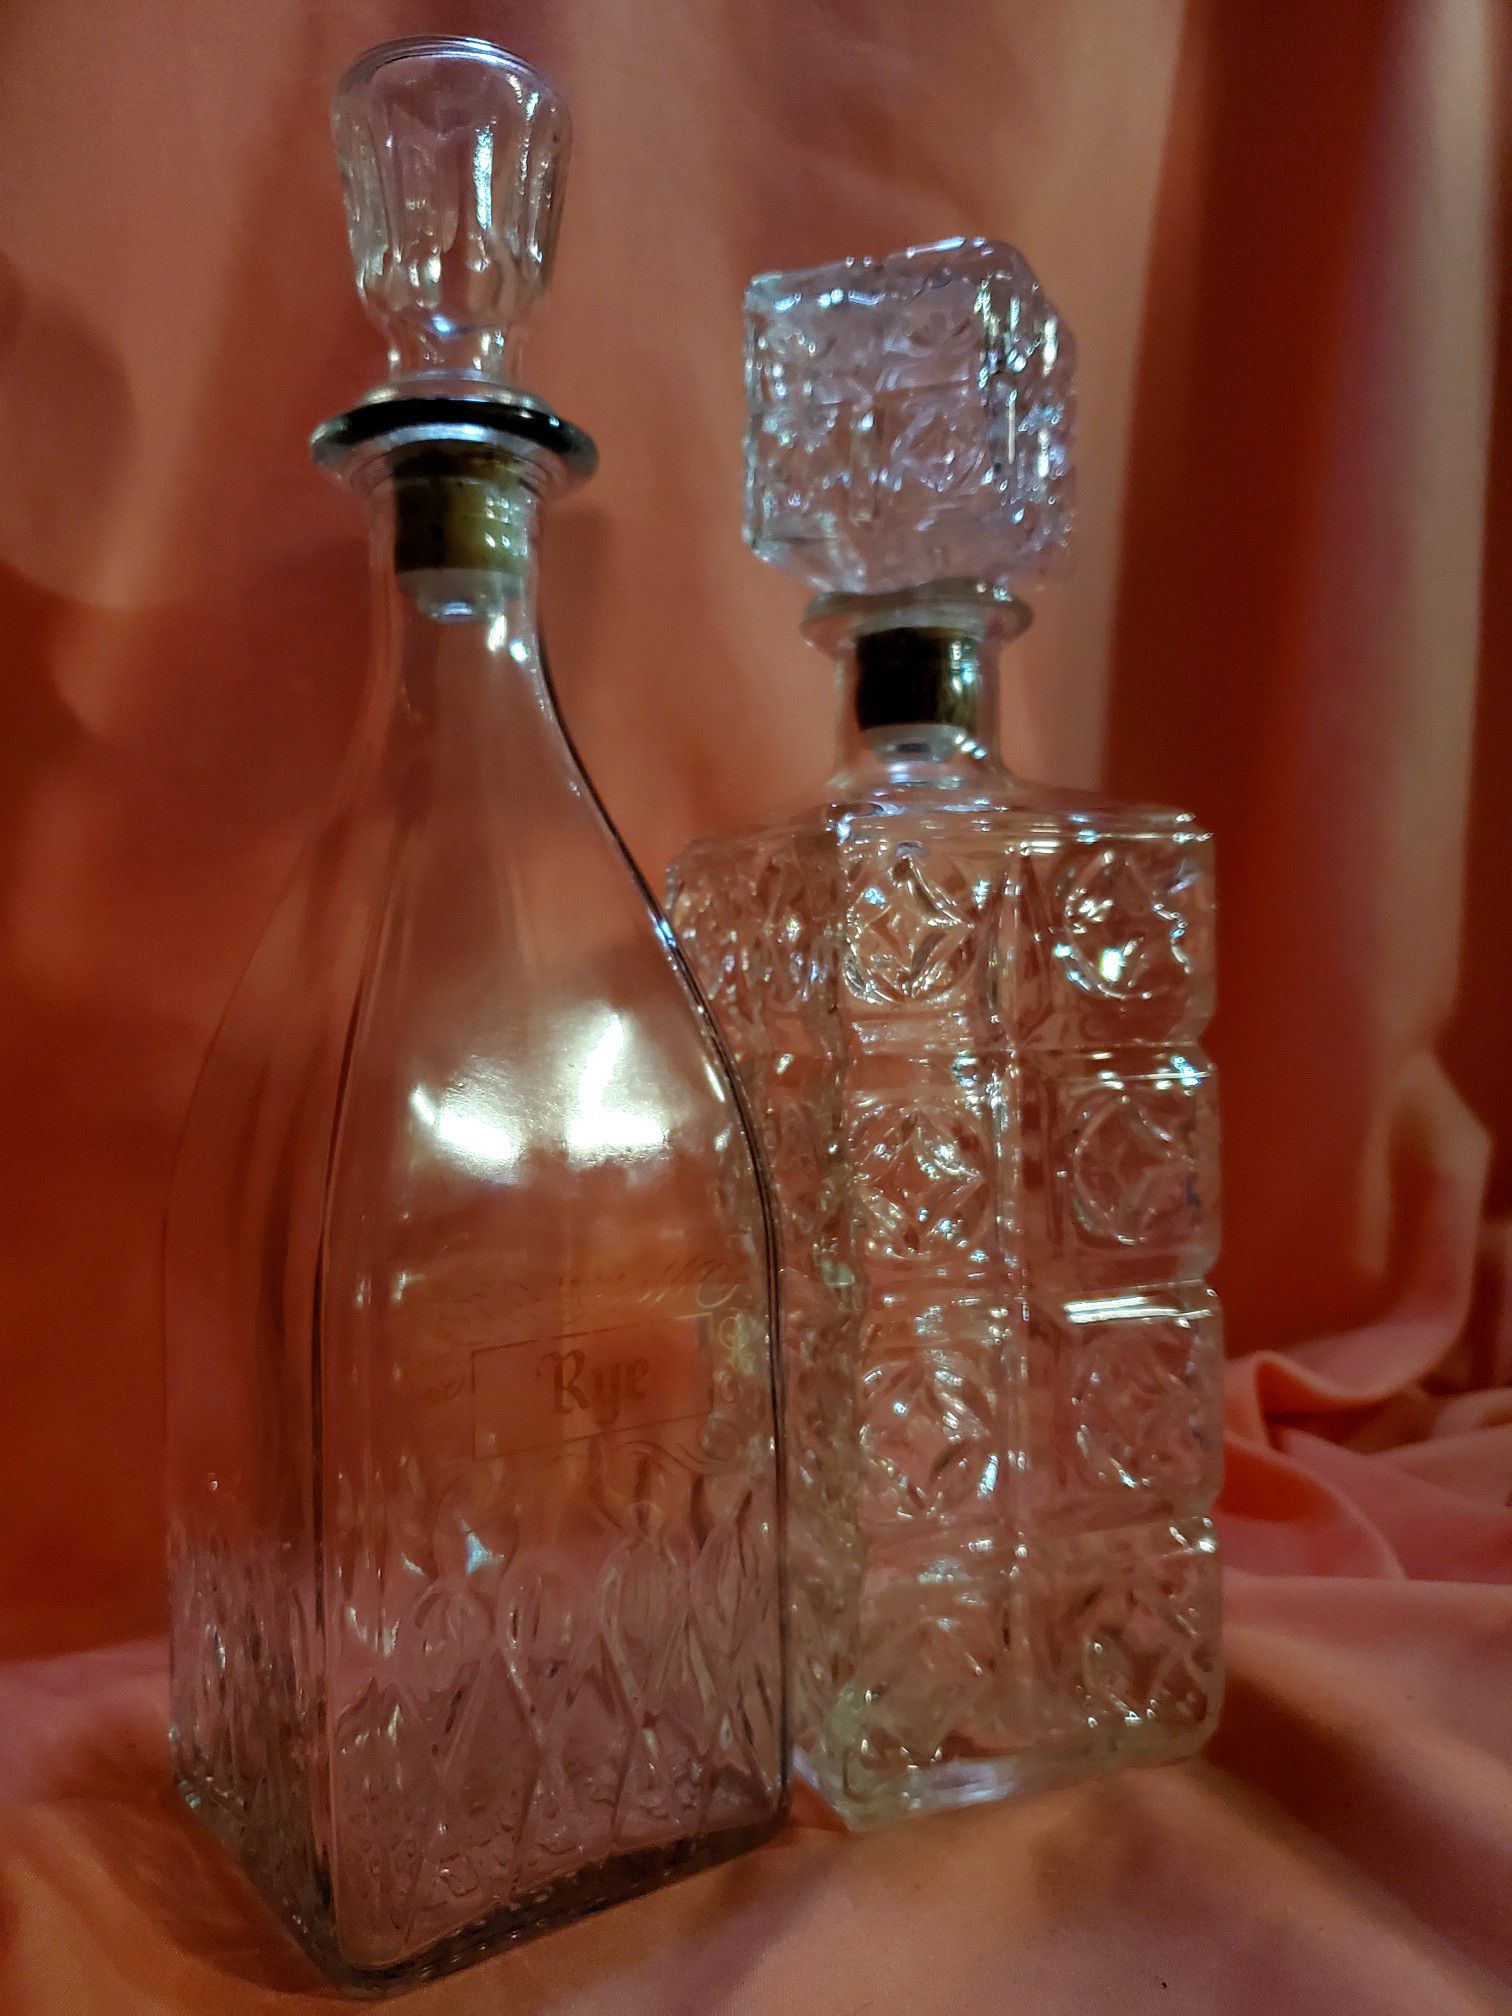 2 Vintage Glass Antique Liquor Bottles/Decanters, Barware - Gorgeous!